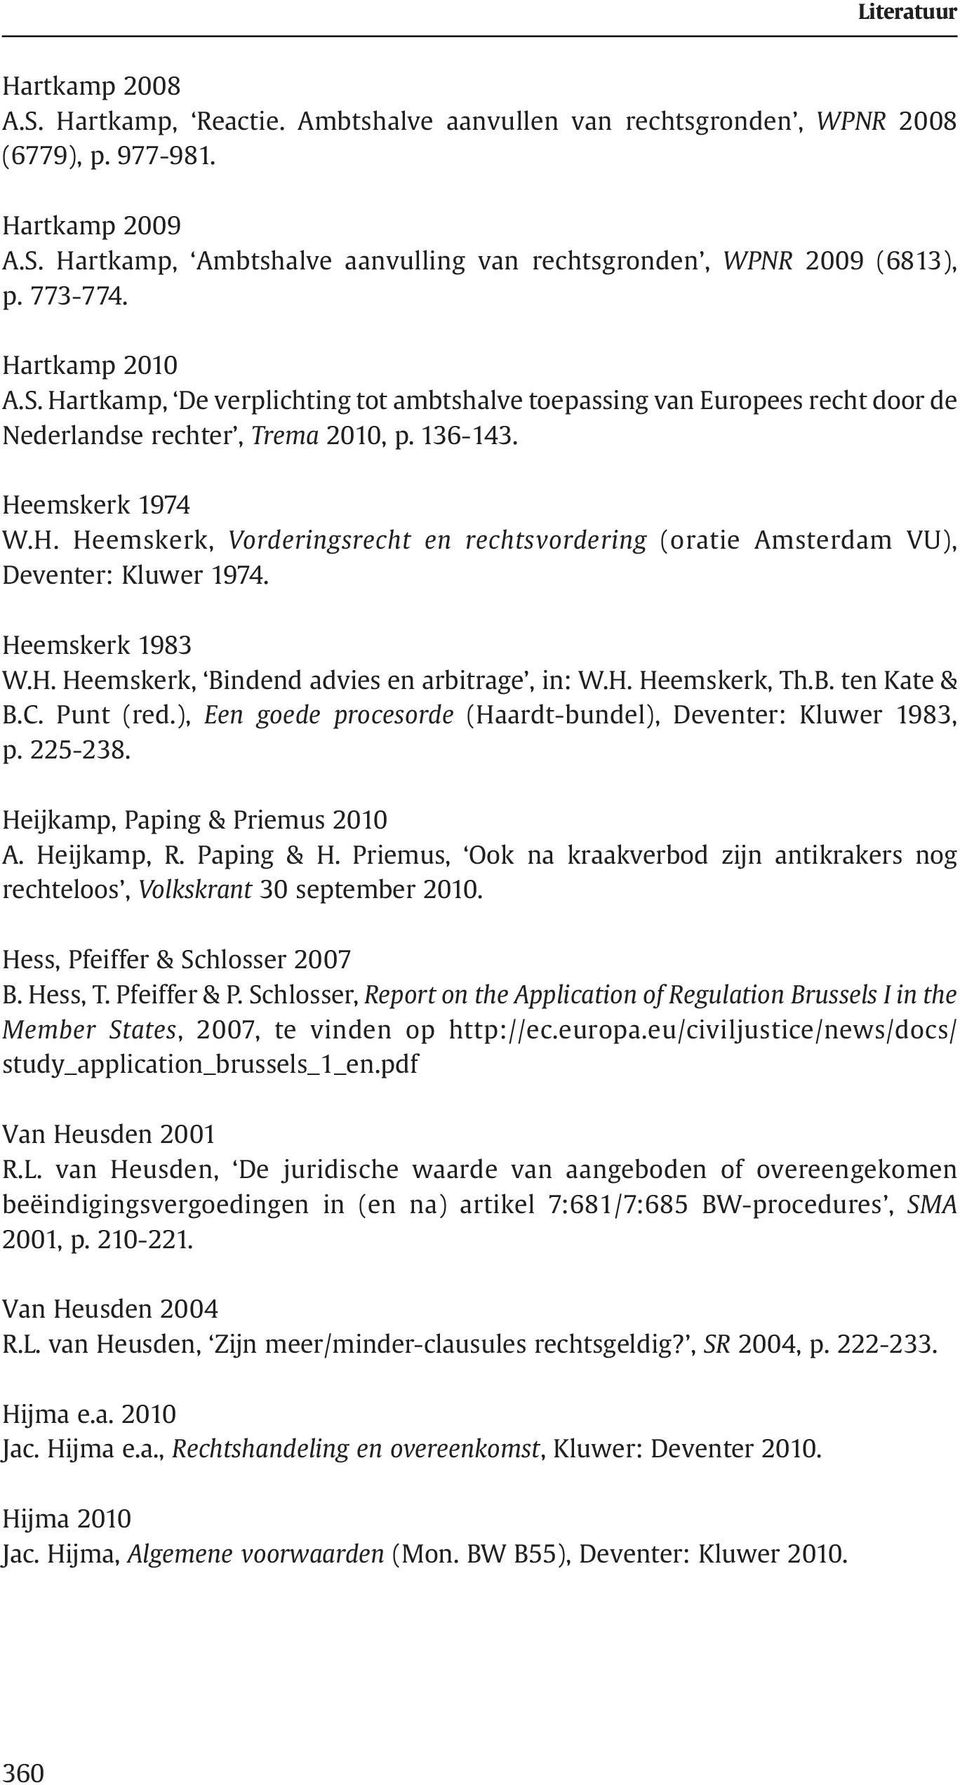 Heemskerk 1983 W.H. Heemskerk, Bindend advies en arbitrage, in: W.H. Heemskerk, Th.B. ten Kate & B.C. Punt (red.), Een goede procesorde (Haardt-bundel), Deventer: Kluwer 1983, p. 225-238.